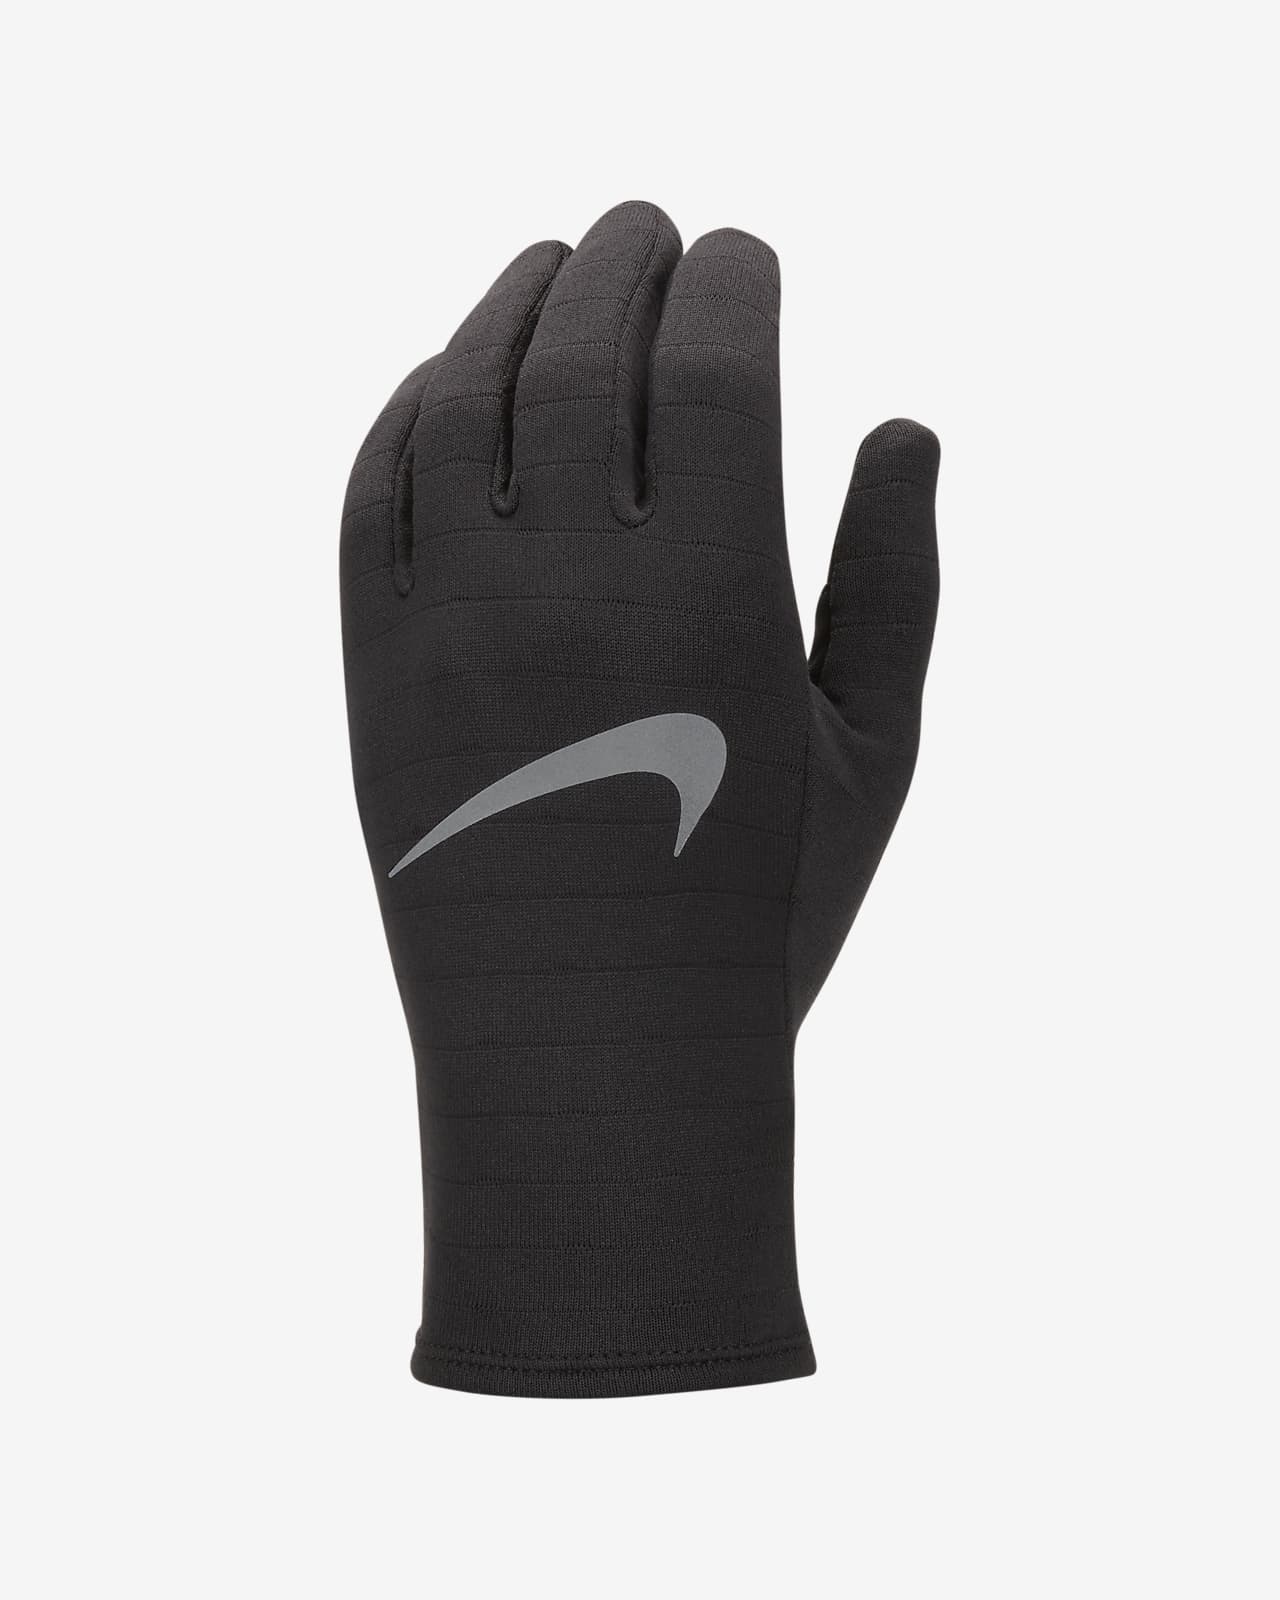 Nike Sphere Men's Running Gloves